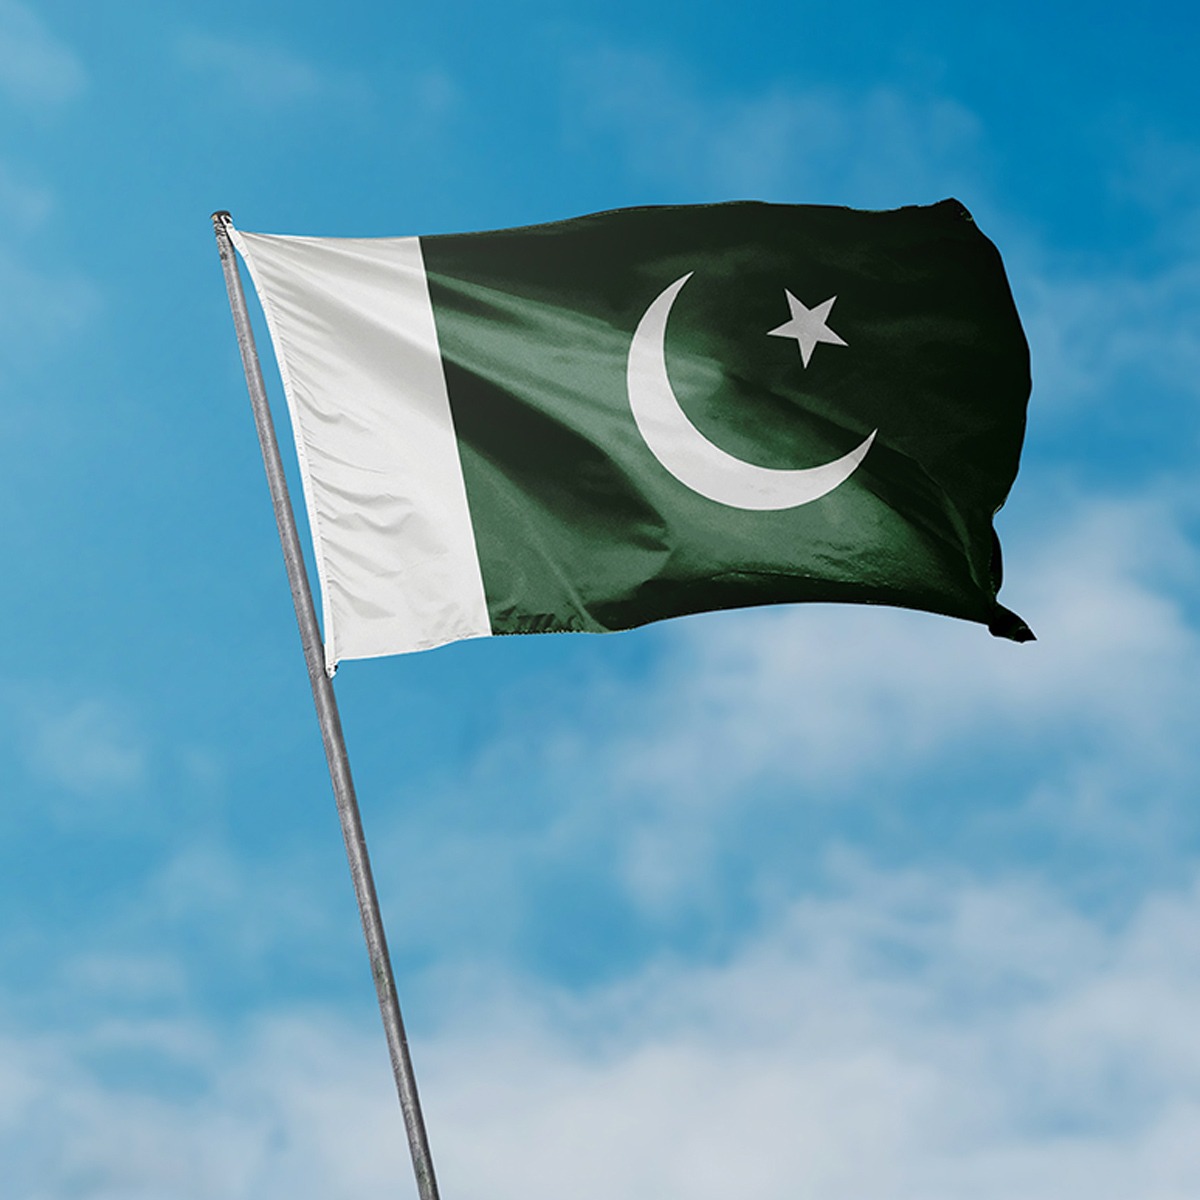 پاکستان توجہ ہٹانے کے لیے بے بنیاد بیانات کیوں دے رہا ہے؟